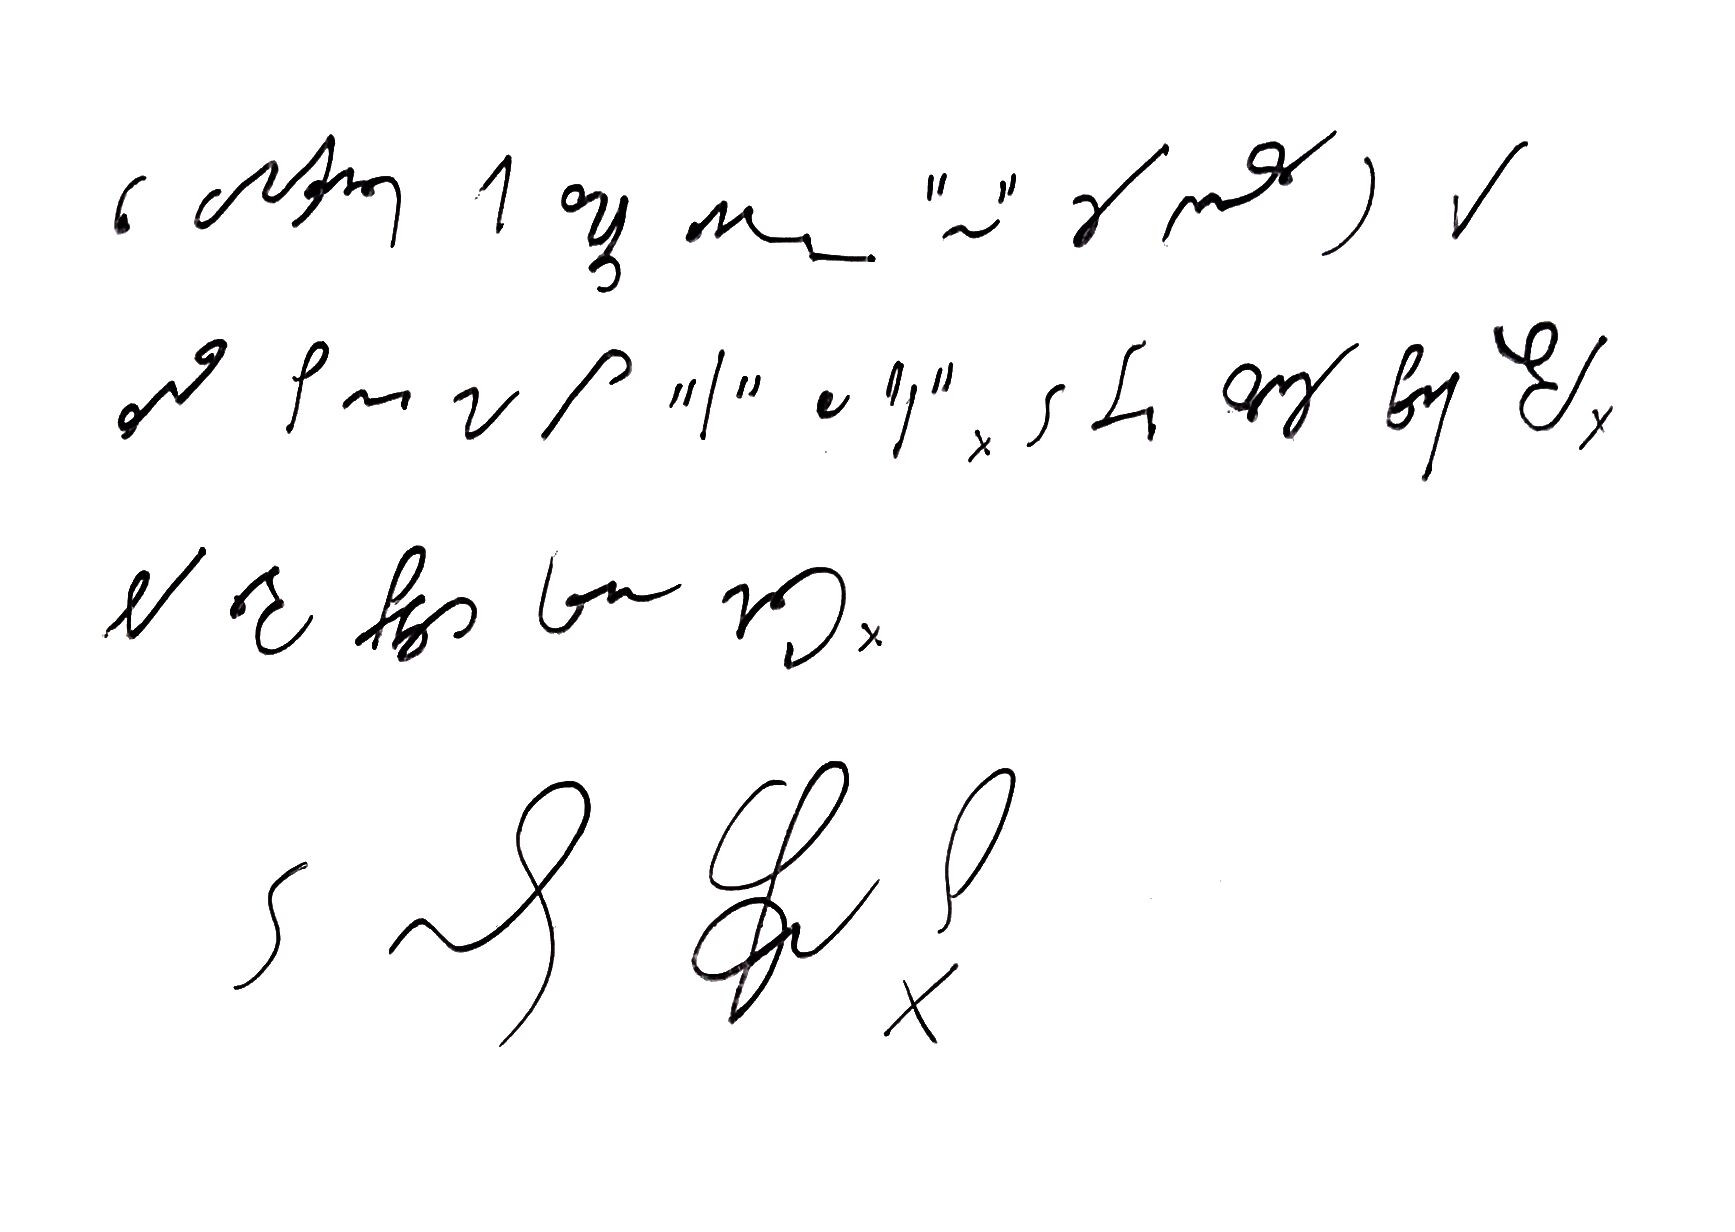 Trzecia kartka wpisu zapisana pismem stenograficznym, tłumaczenie w tekście wpisu